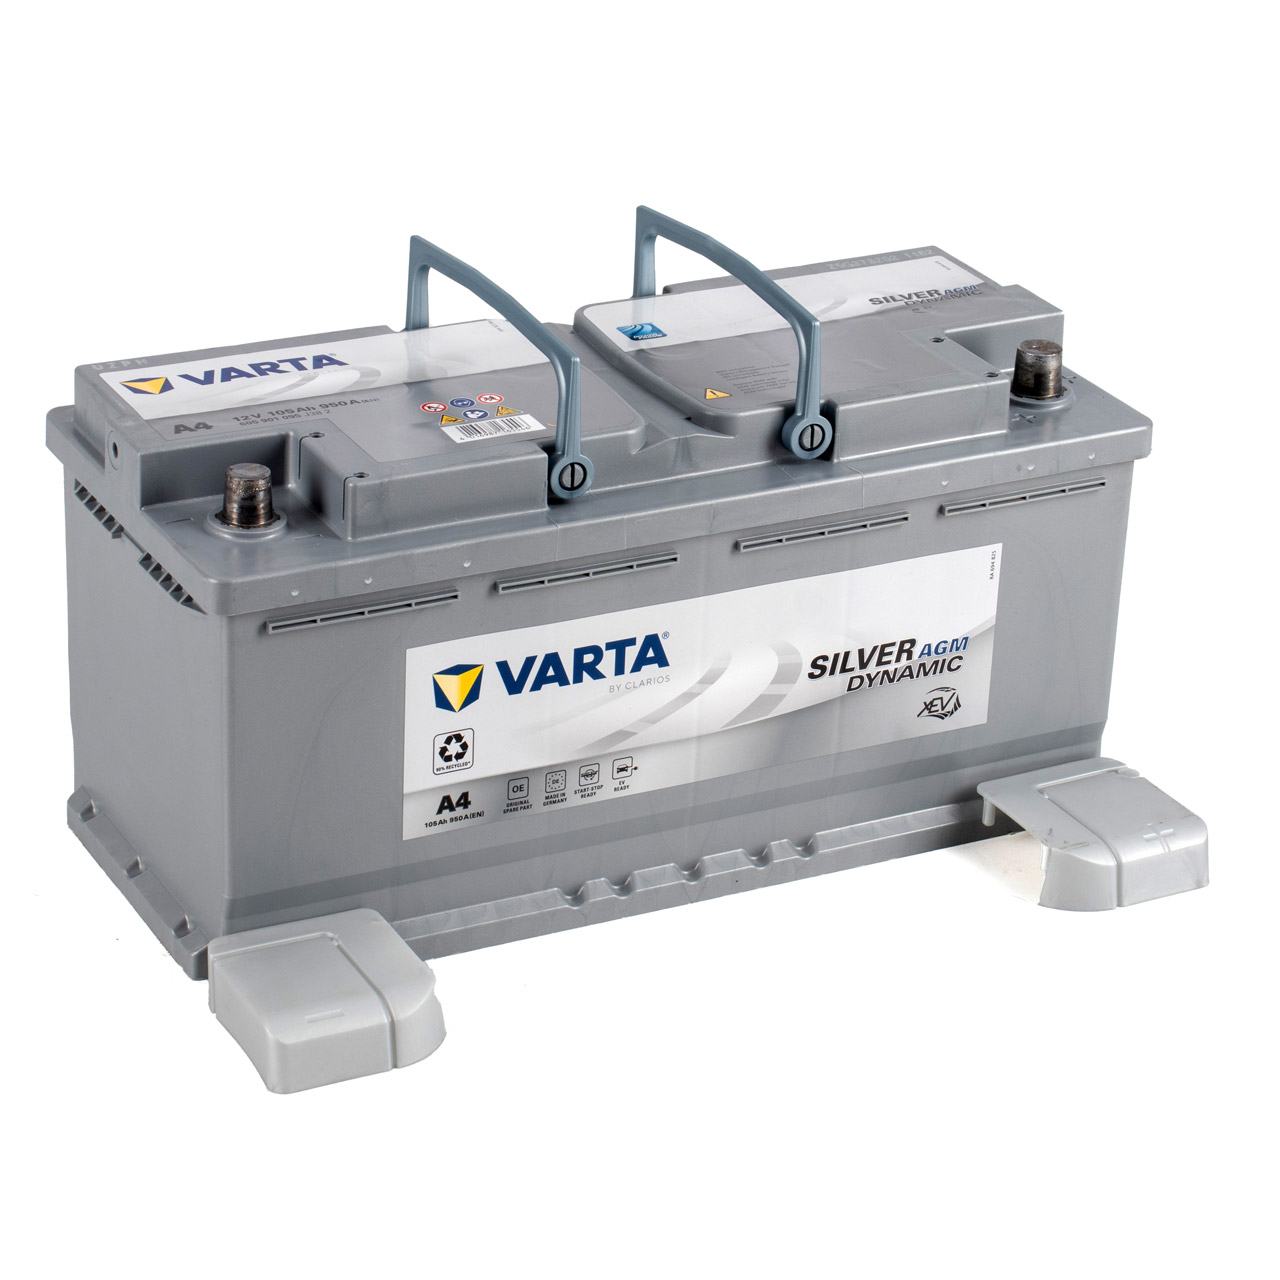 VARTA Starterbatterien / Autobatterien - 605901095D852 - ws